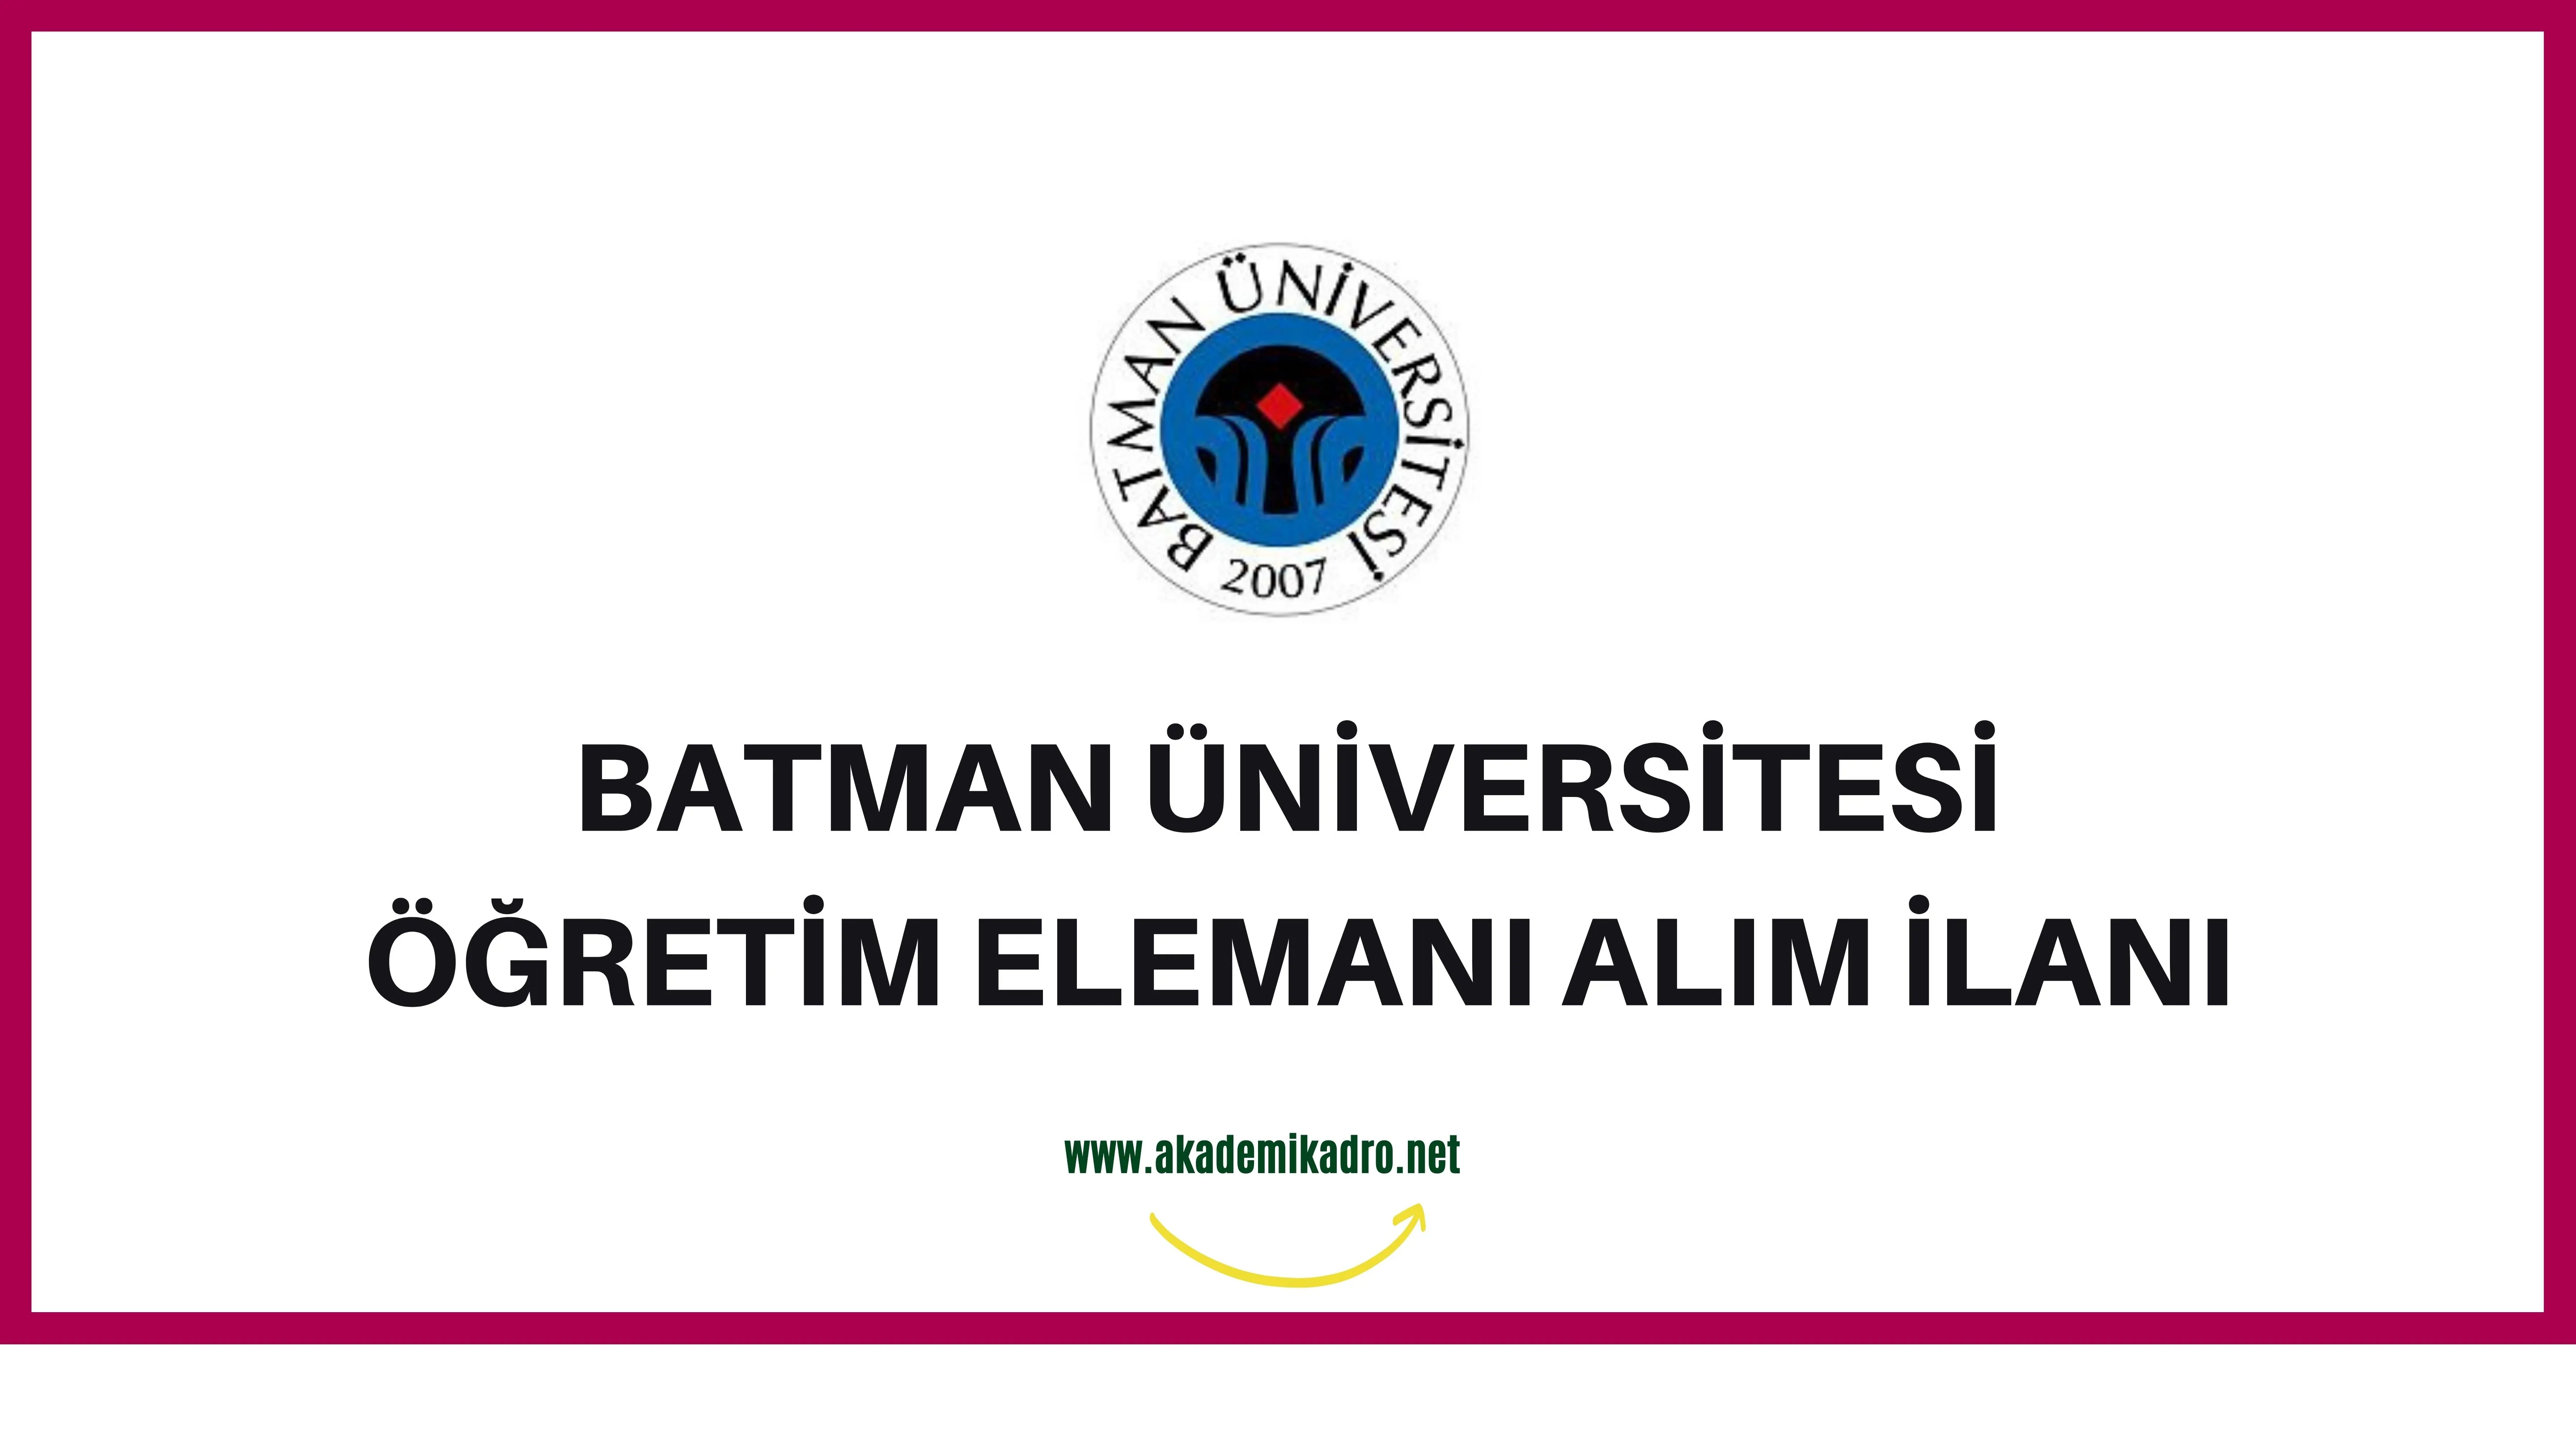 Batman Üniversitesi Araştırma görevlisi, 6 Öğretim görevlisi ve 17 Öğretim üyesi olmak üzere 24 Öğretim elemanı alacak.